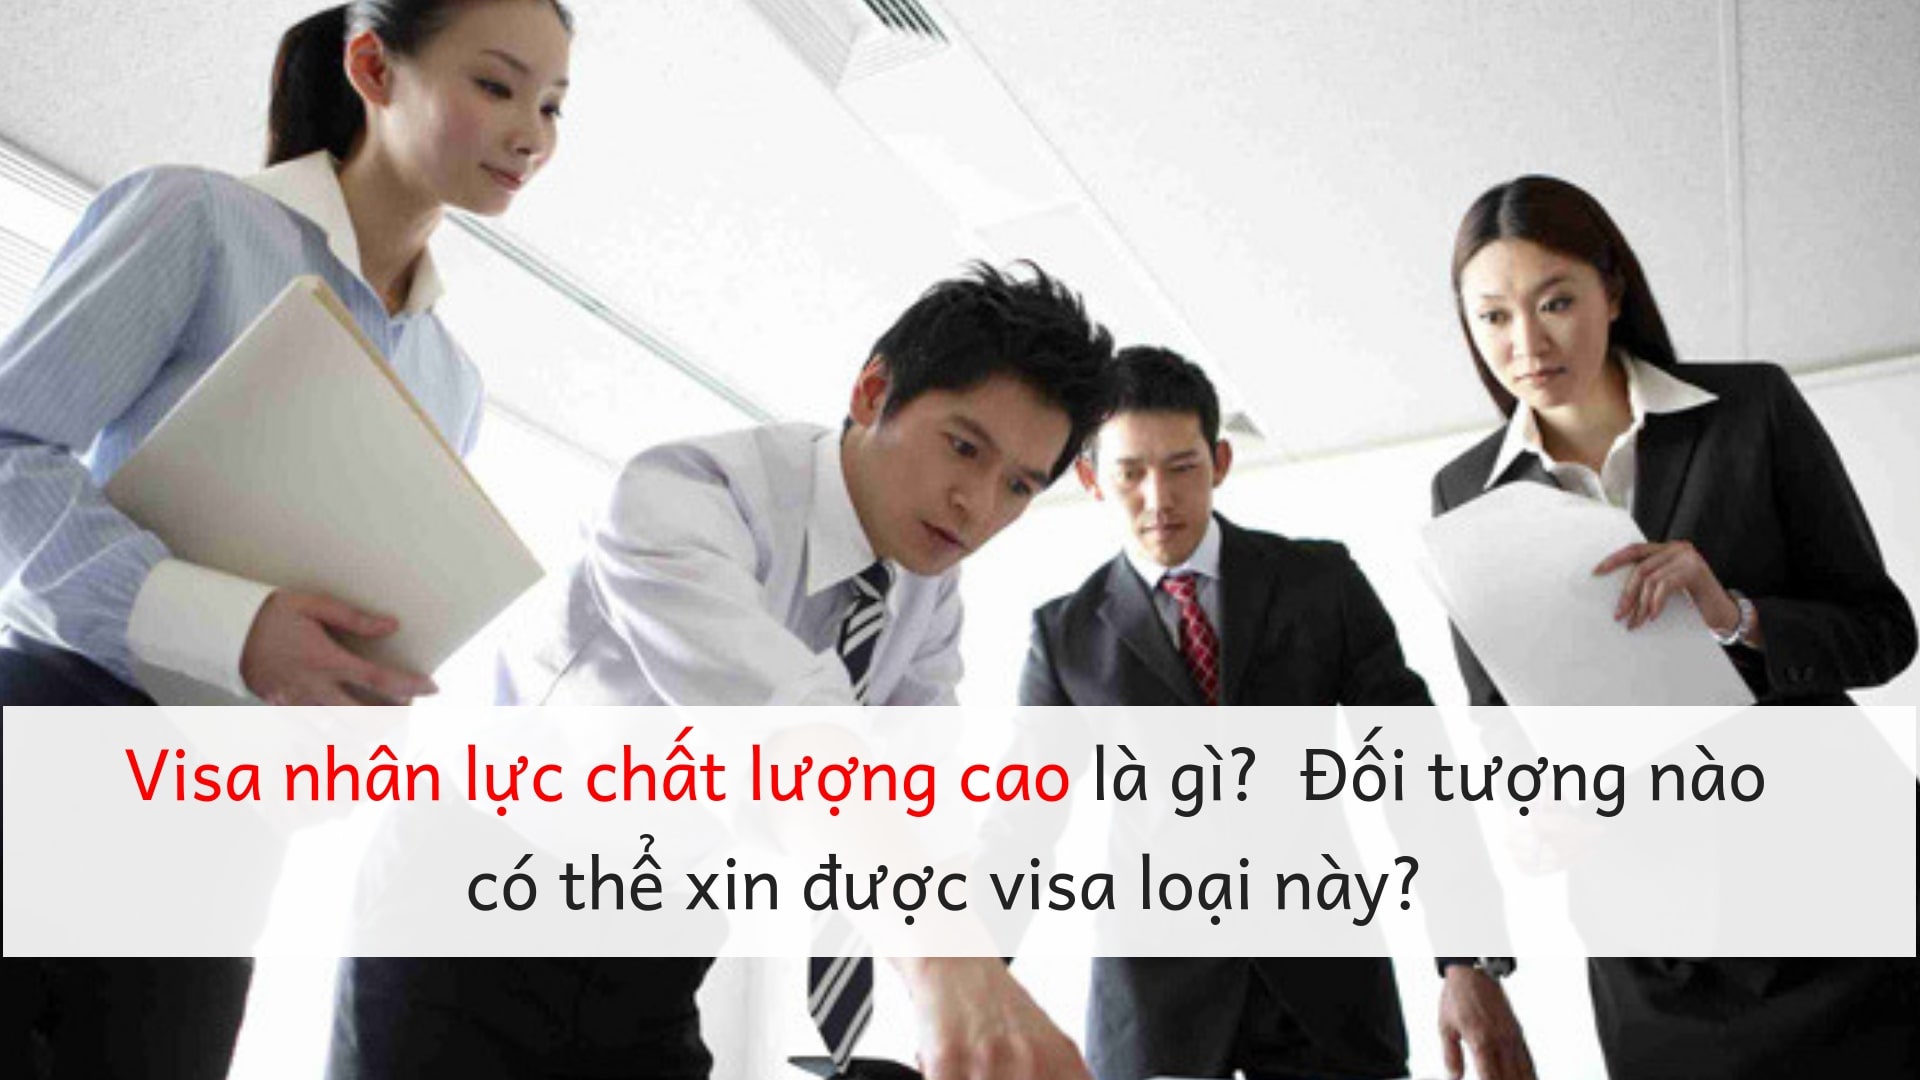 Visa nhân lực chất lượng cao là gì? Đối tượng nào có thể xin được visa loại này?